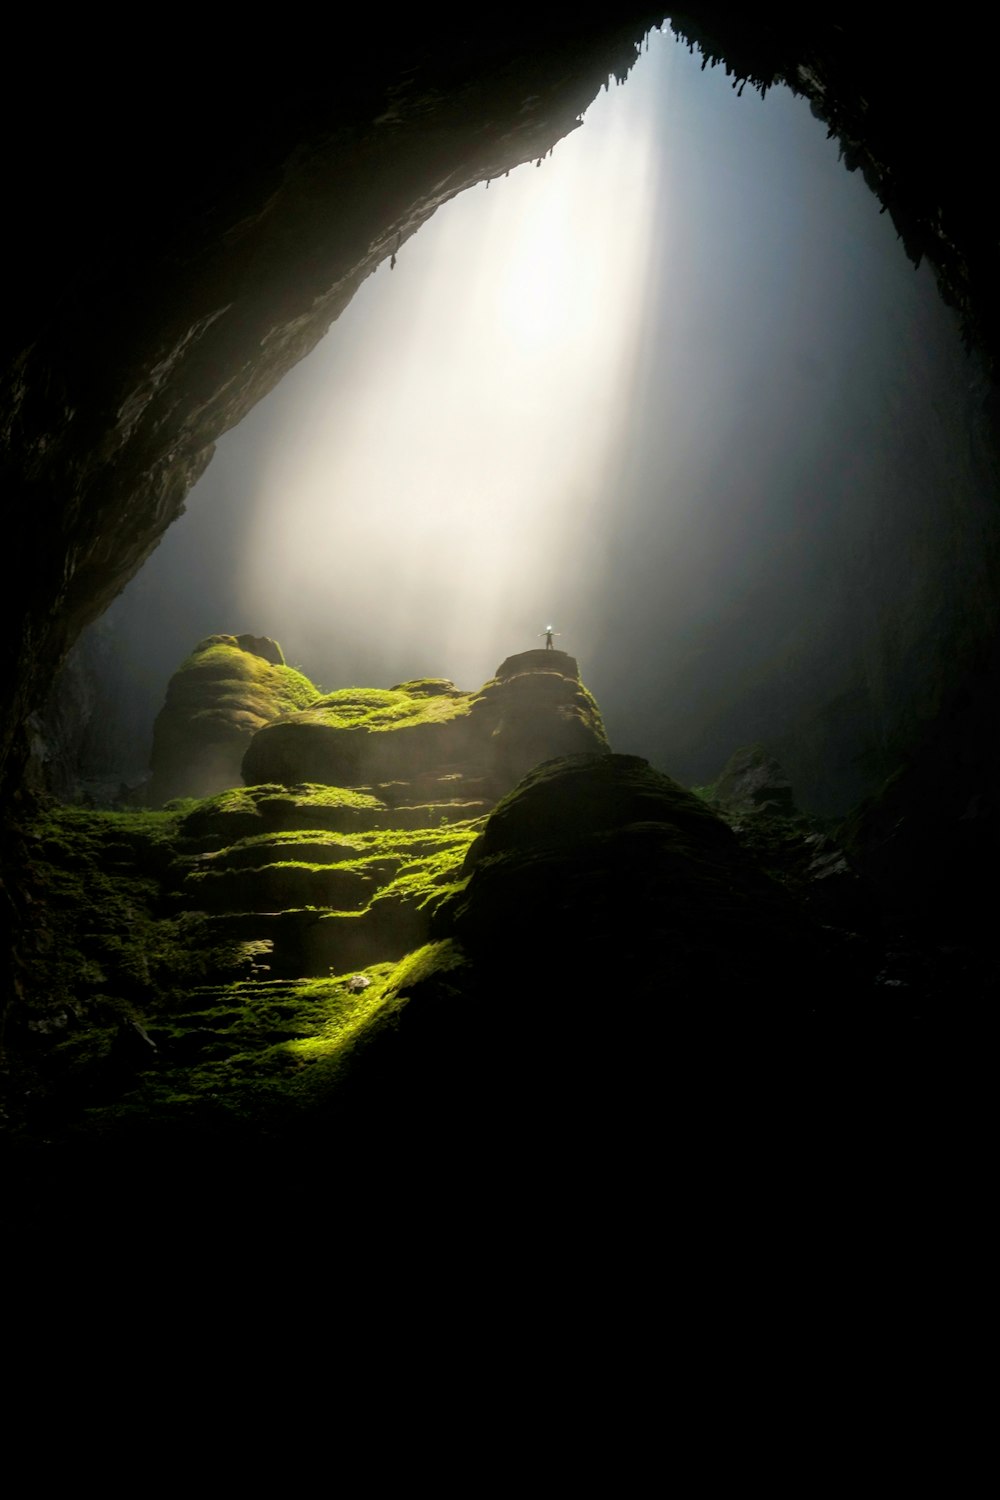 persona in cima alla formazione rocciosa all'interno della grotta